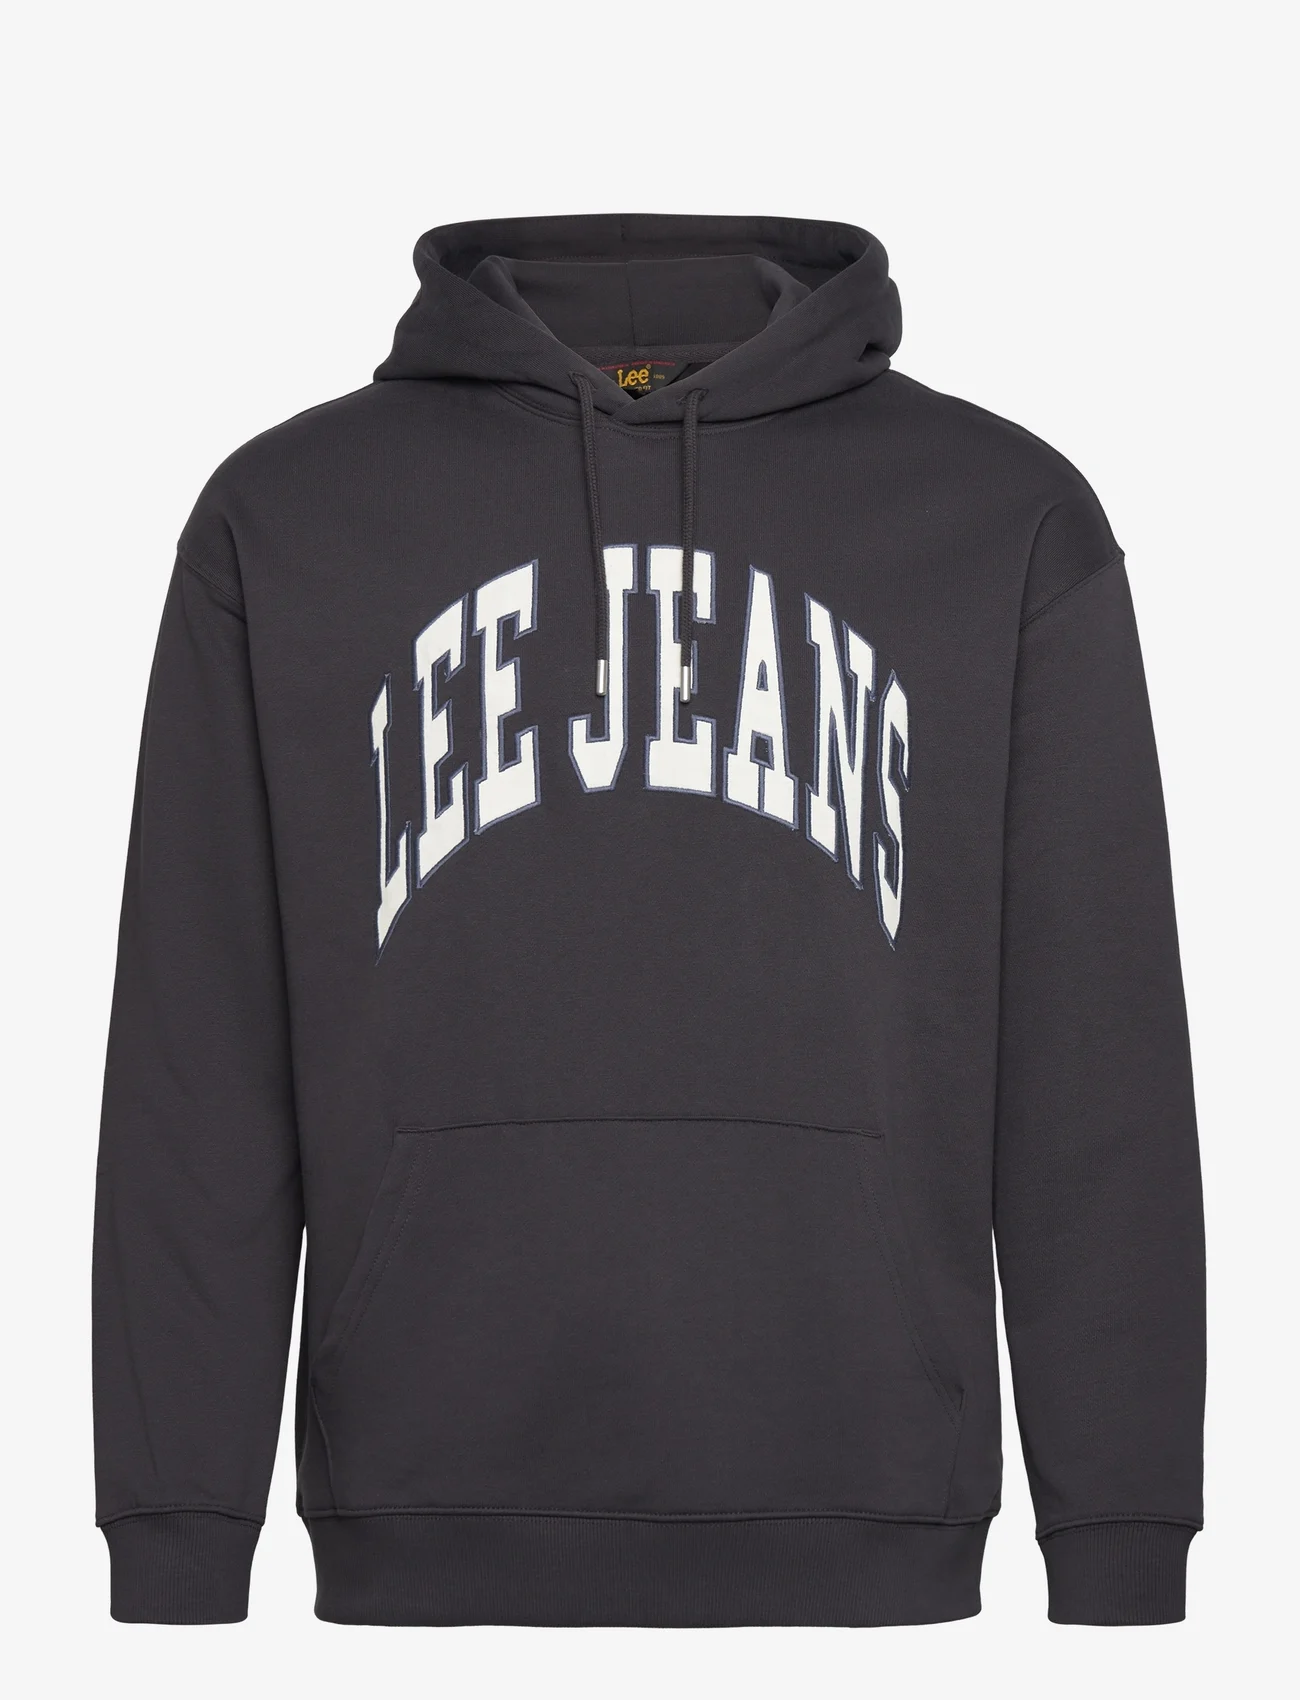 Lee Jeans - VARSITY HOODIE - hoodies - washed black - 0